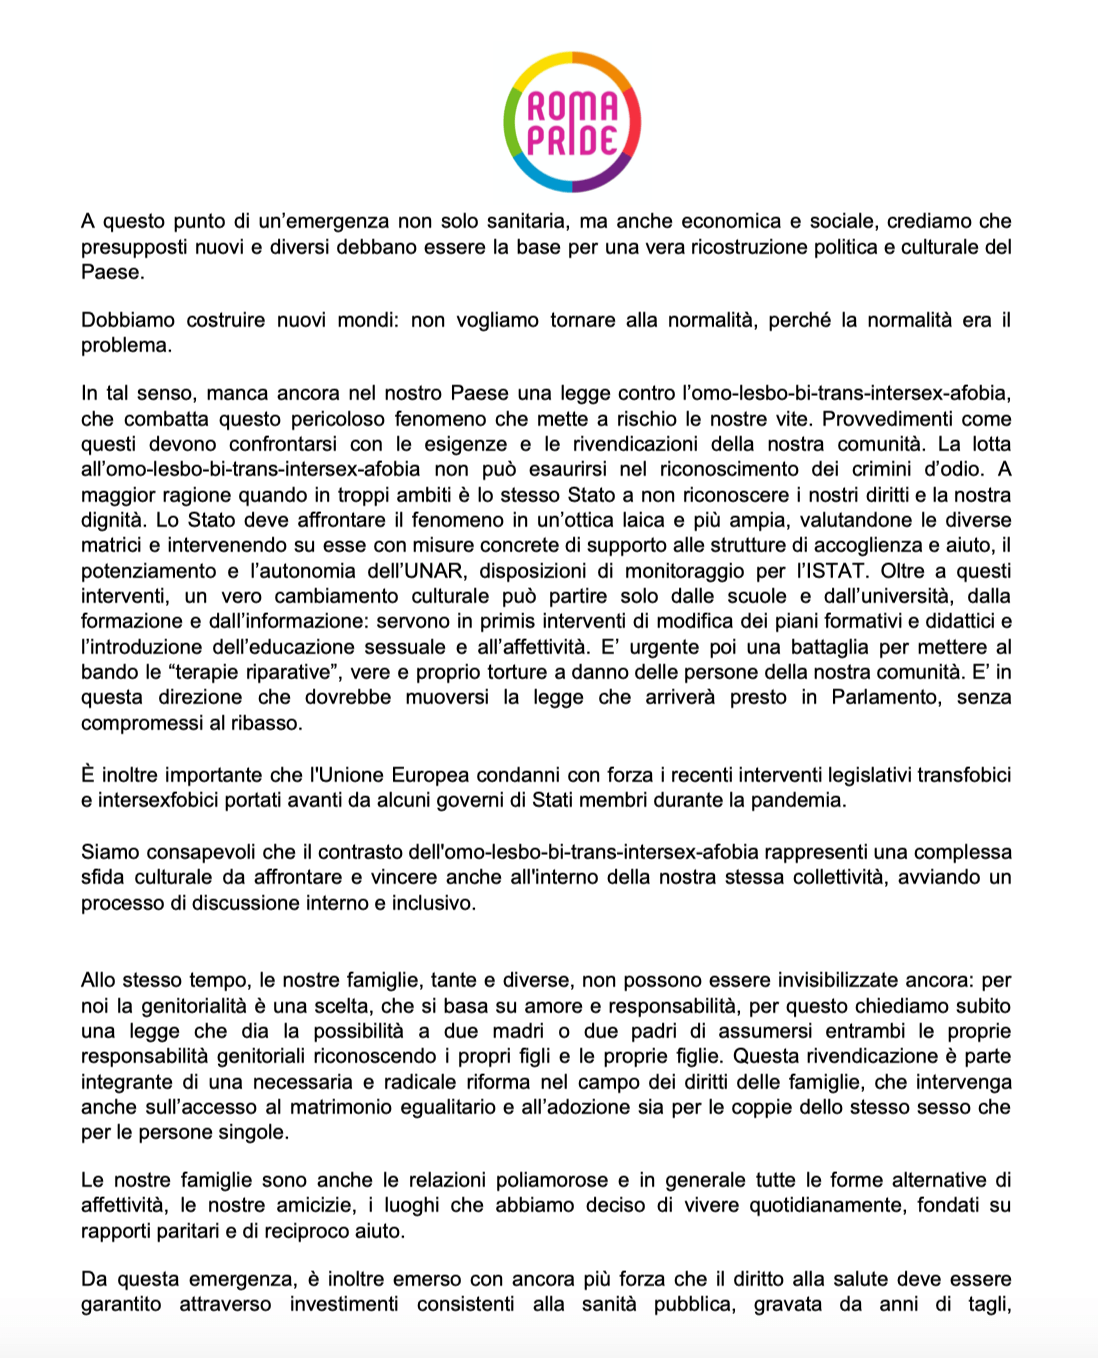 Roma Pride 2020, il Coronavirus ferma la parata ma non l’orgoglio - documento politico, spot e manifesto - Schermata 2020 06 13 alle 11.19.56 1 - Gay.it